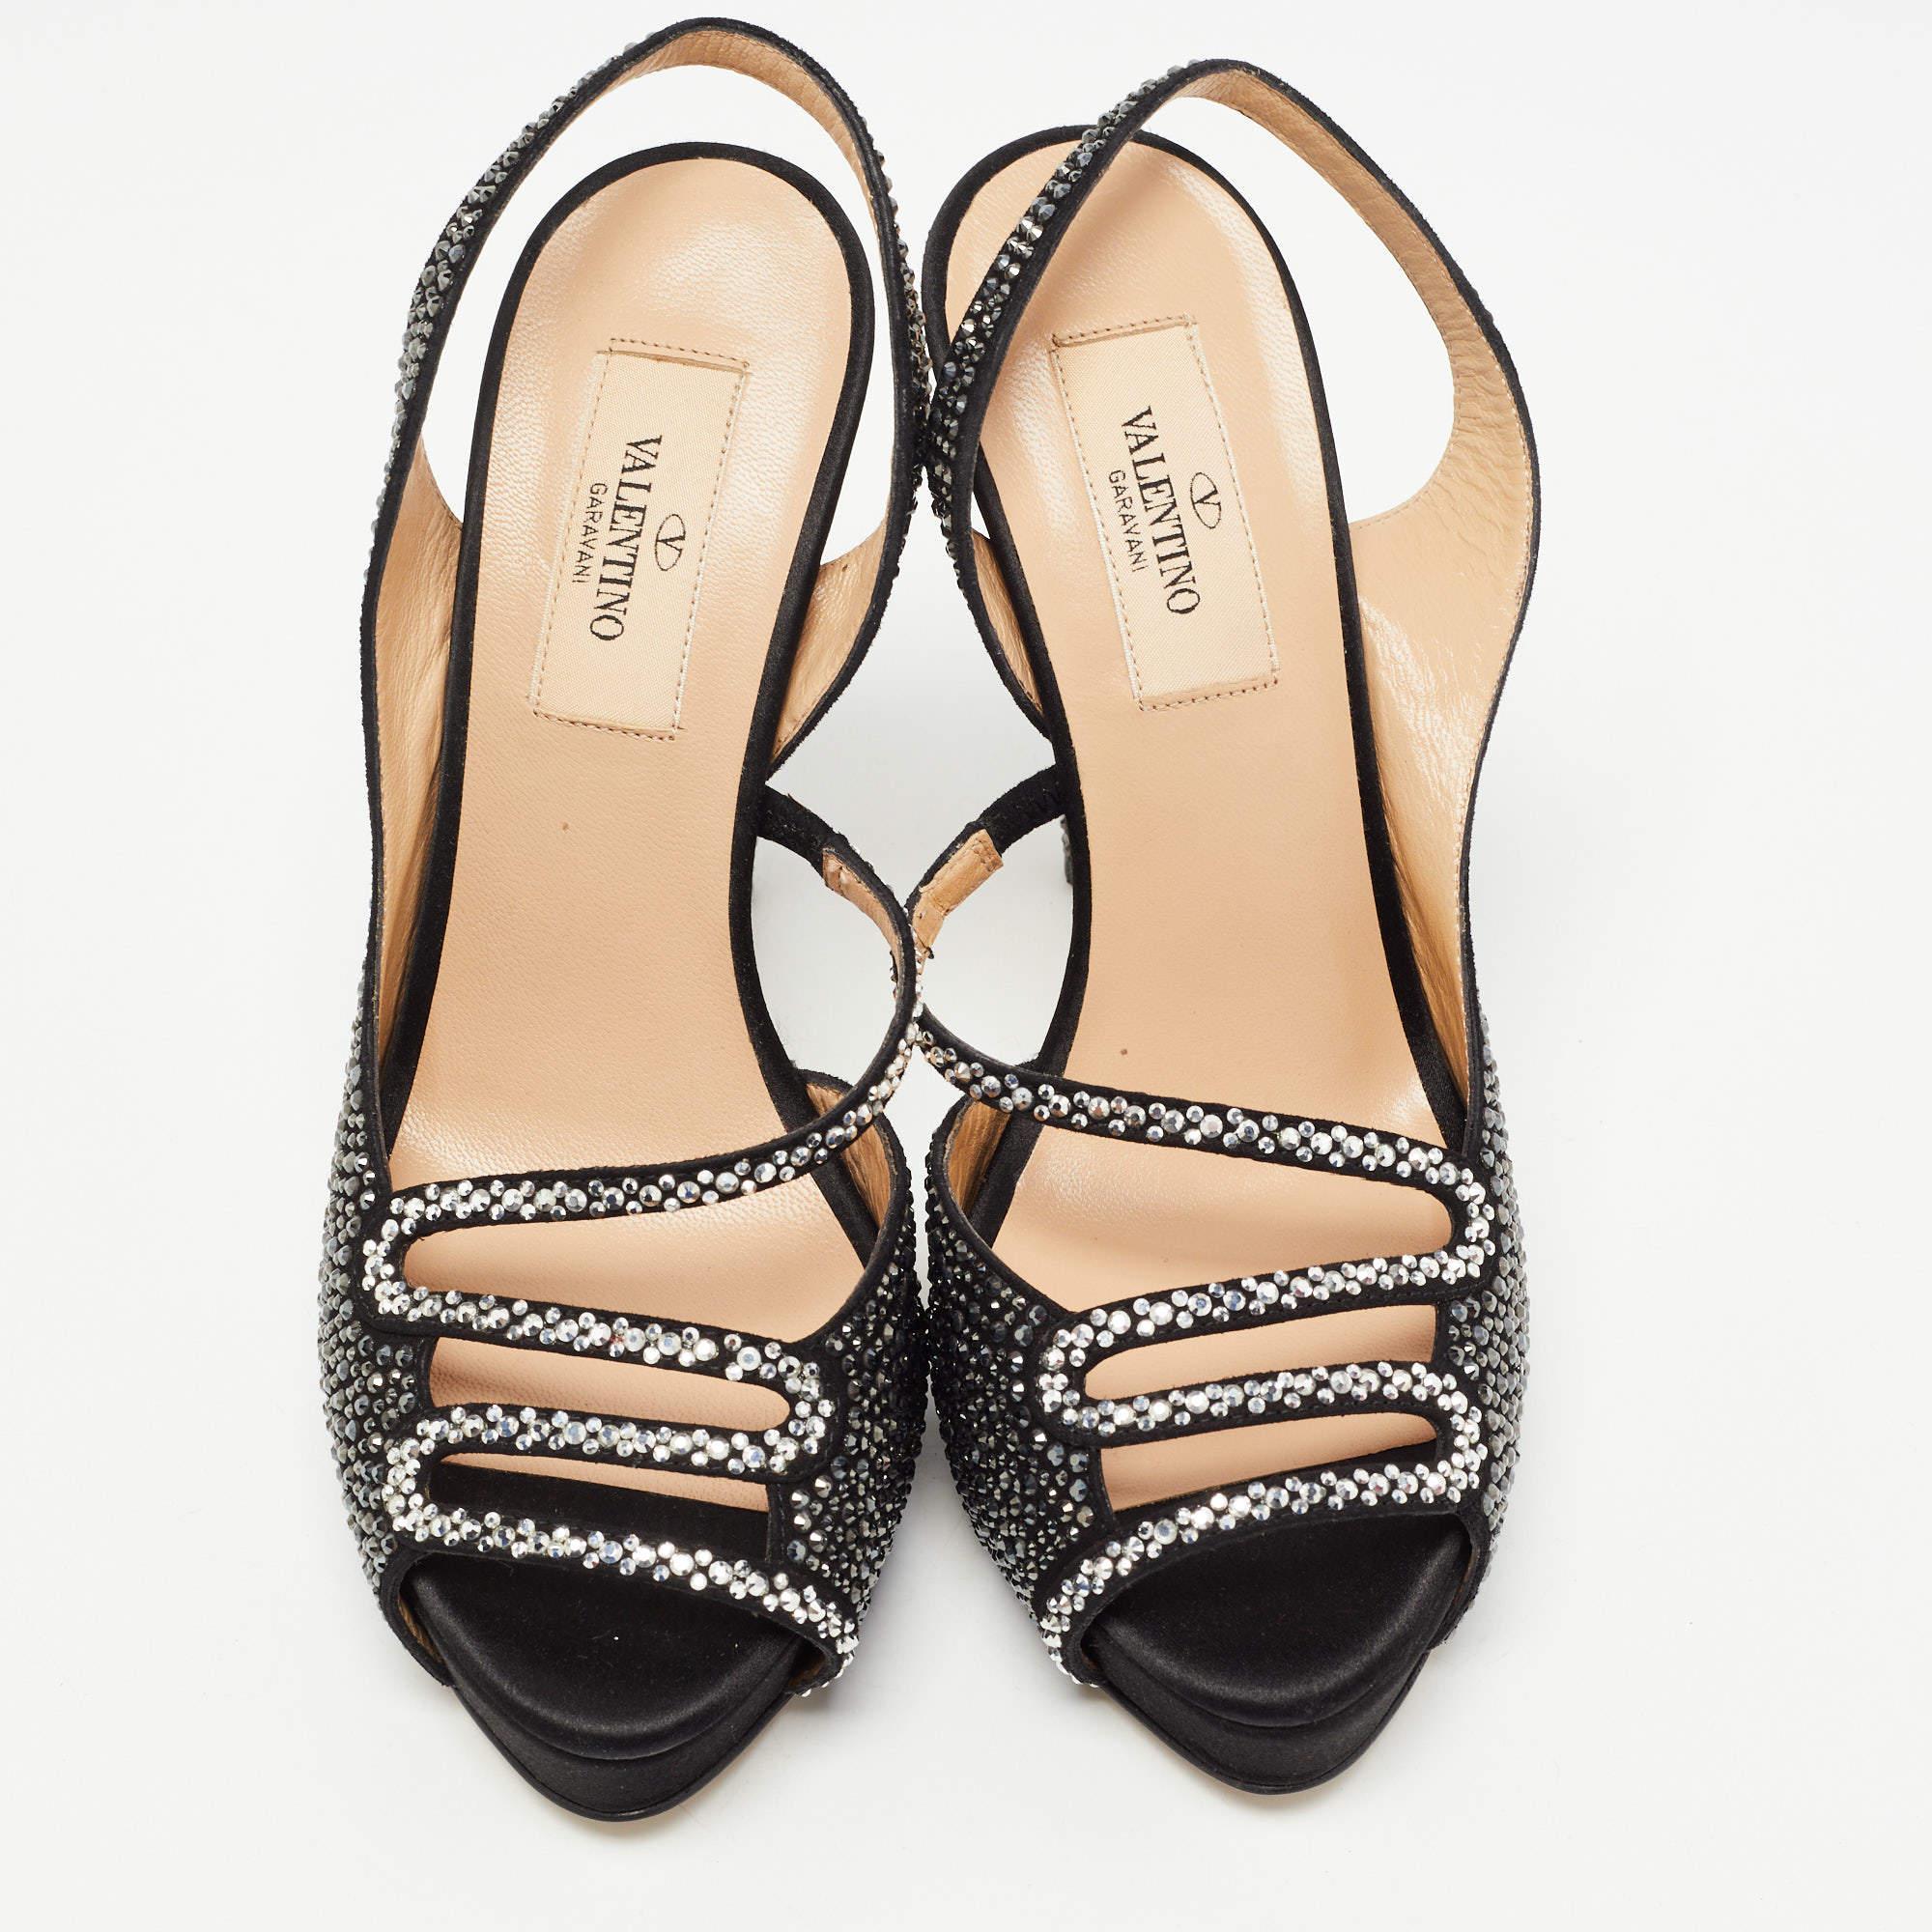 Valentino Black Suede and Crystal Embellished Slingback Sandals Size 36 1